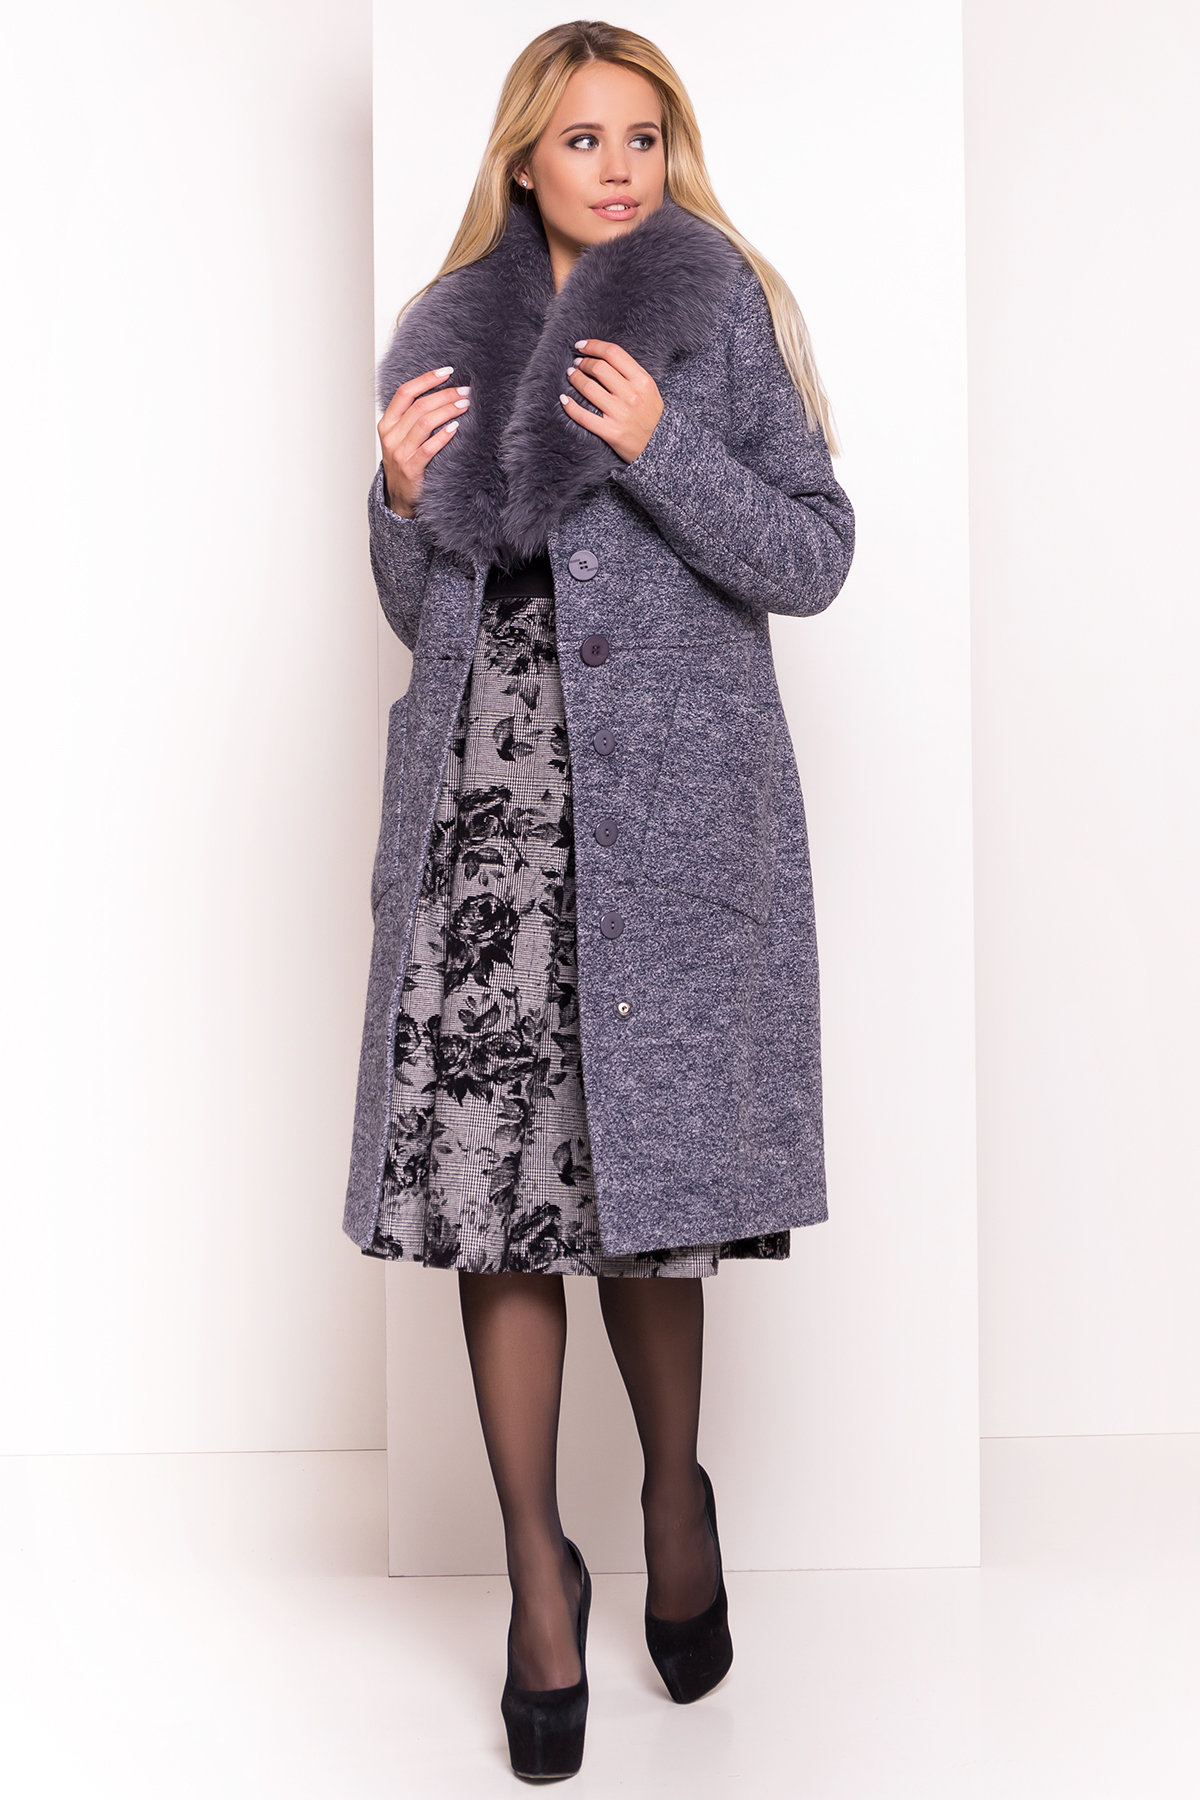 Утепленное пальто зима с накладными карманами Габриэлла 4155 АРТ. 20306 Цвет: Серый темный LW-22 - фото 1, интернет магазин tm-modus.ru